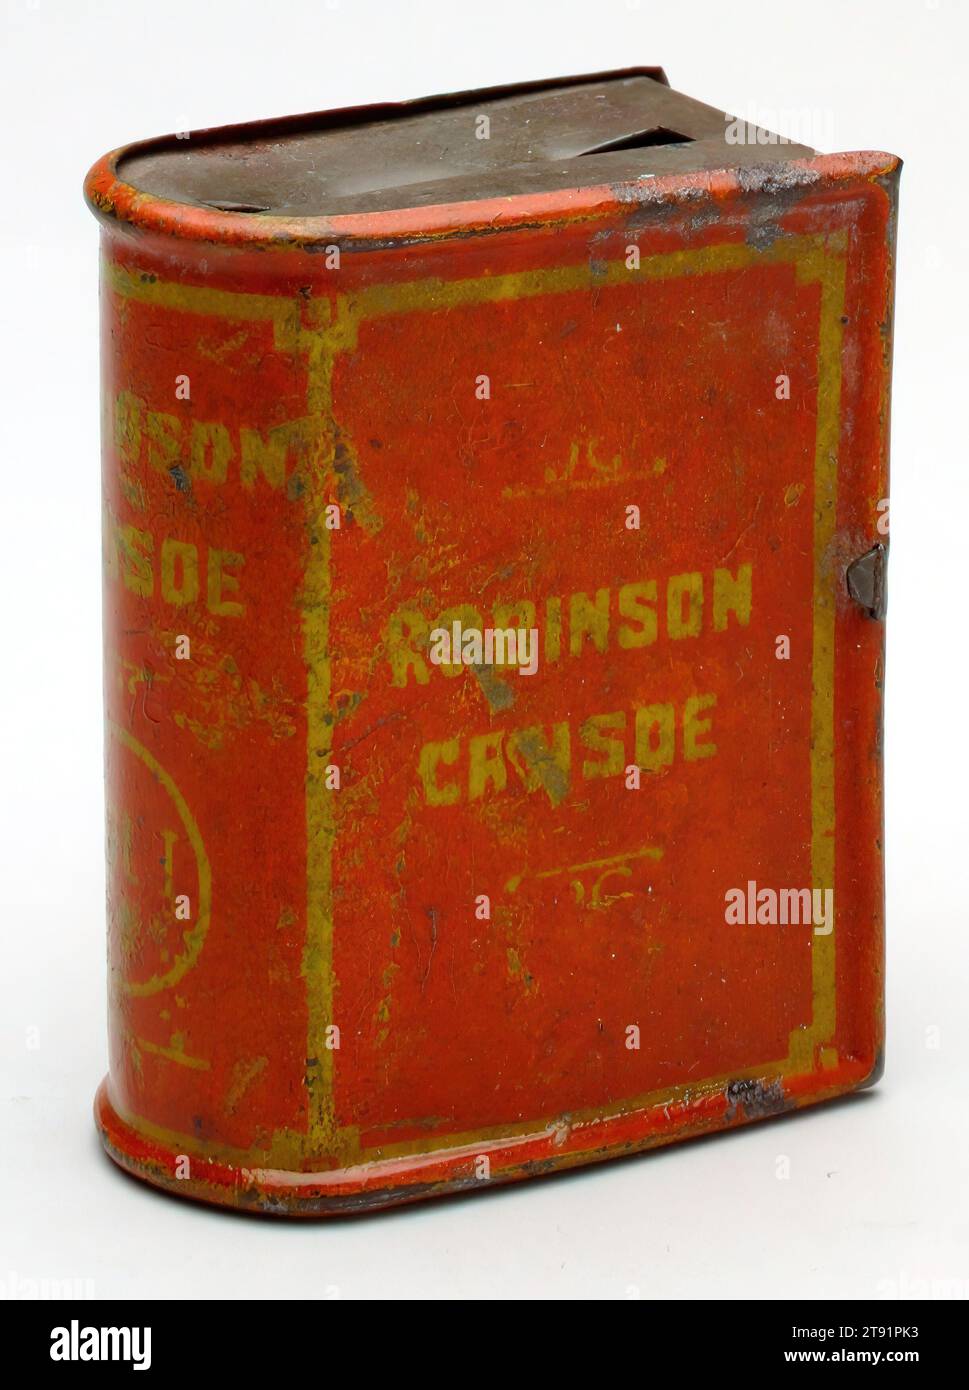 Robinson Crusoe (libro)' STILL Bank, inizio XX secolo, 1 7/8 x 1 7/16 x 1 3/16" (4,76 x 3,65 x 3,02 cm), stagno, pigmento, Inghilterra (probabilmente), XX secolo Foto Stock